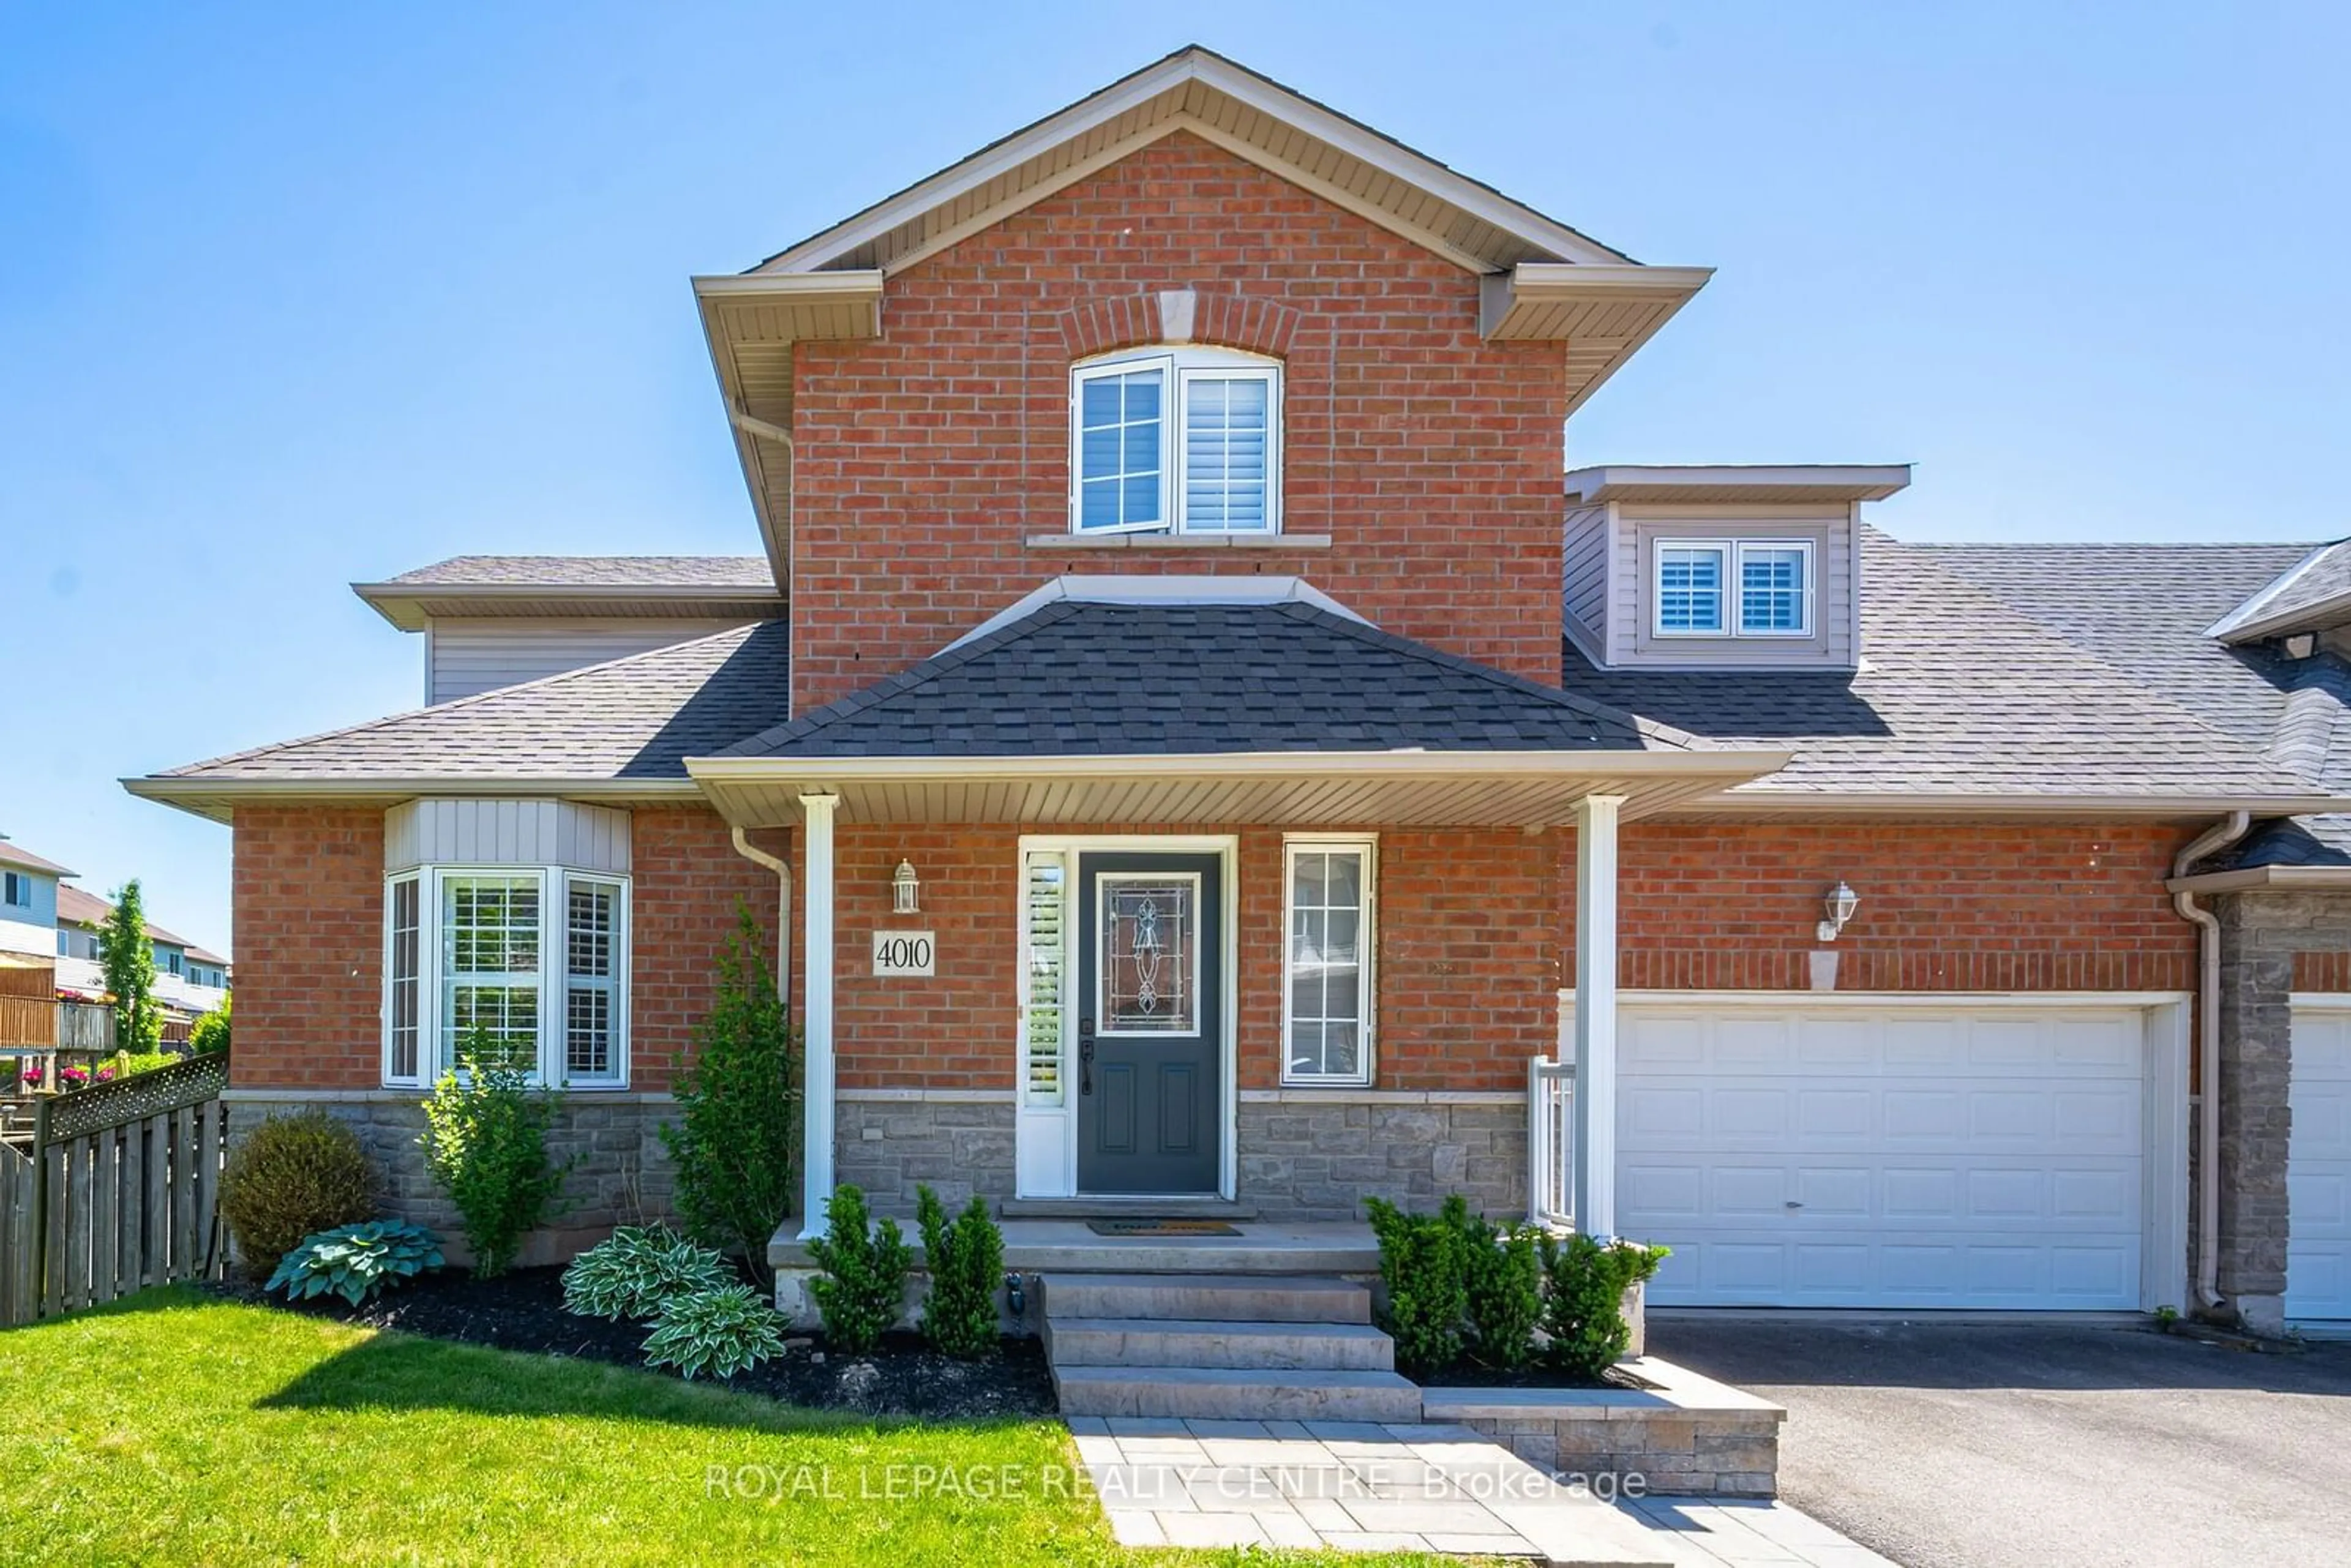 Home with brick exterior material for 4010 Medland Dr, Burlington Ontario L7M 4W7